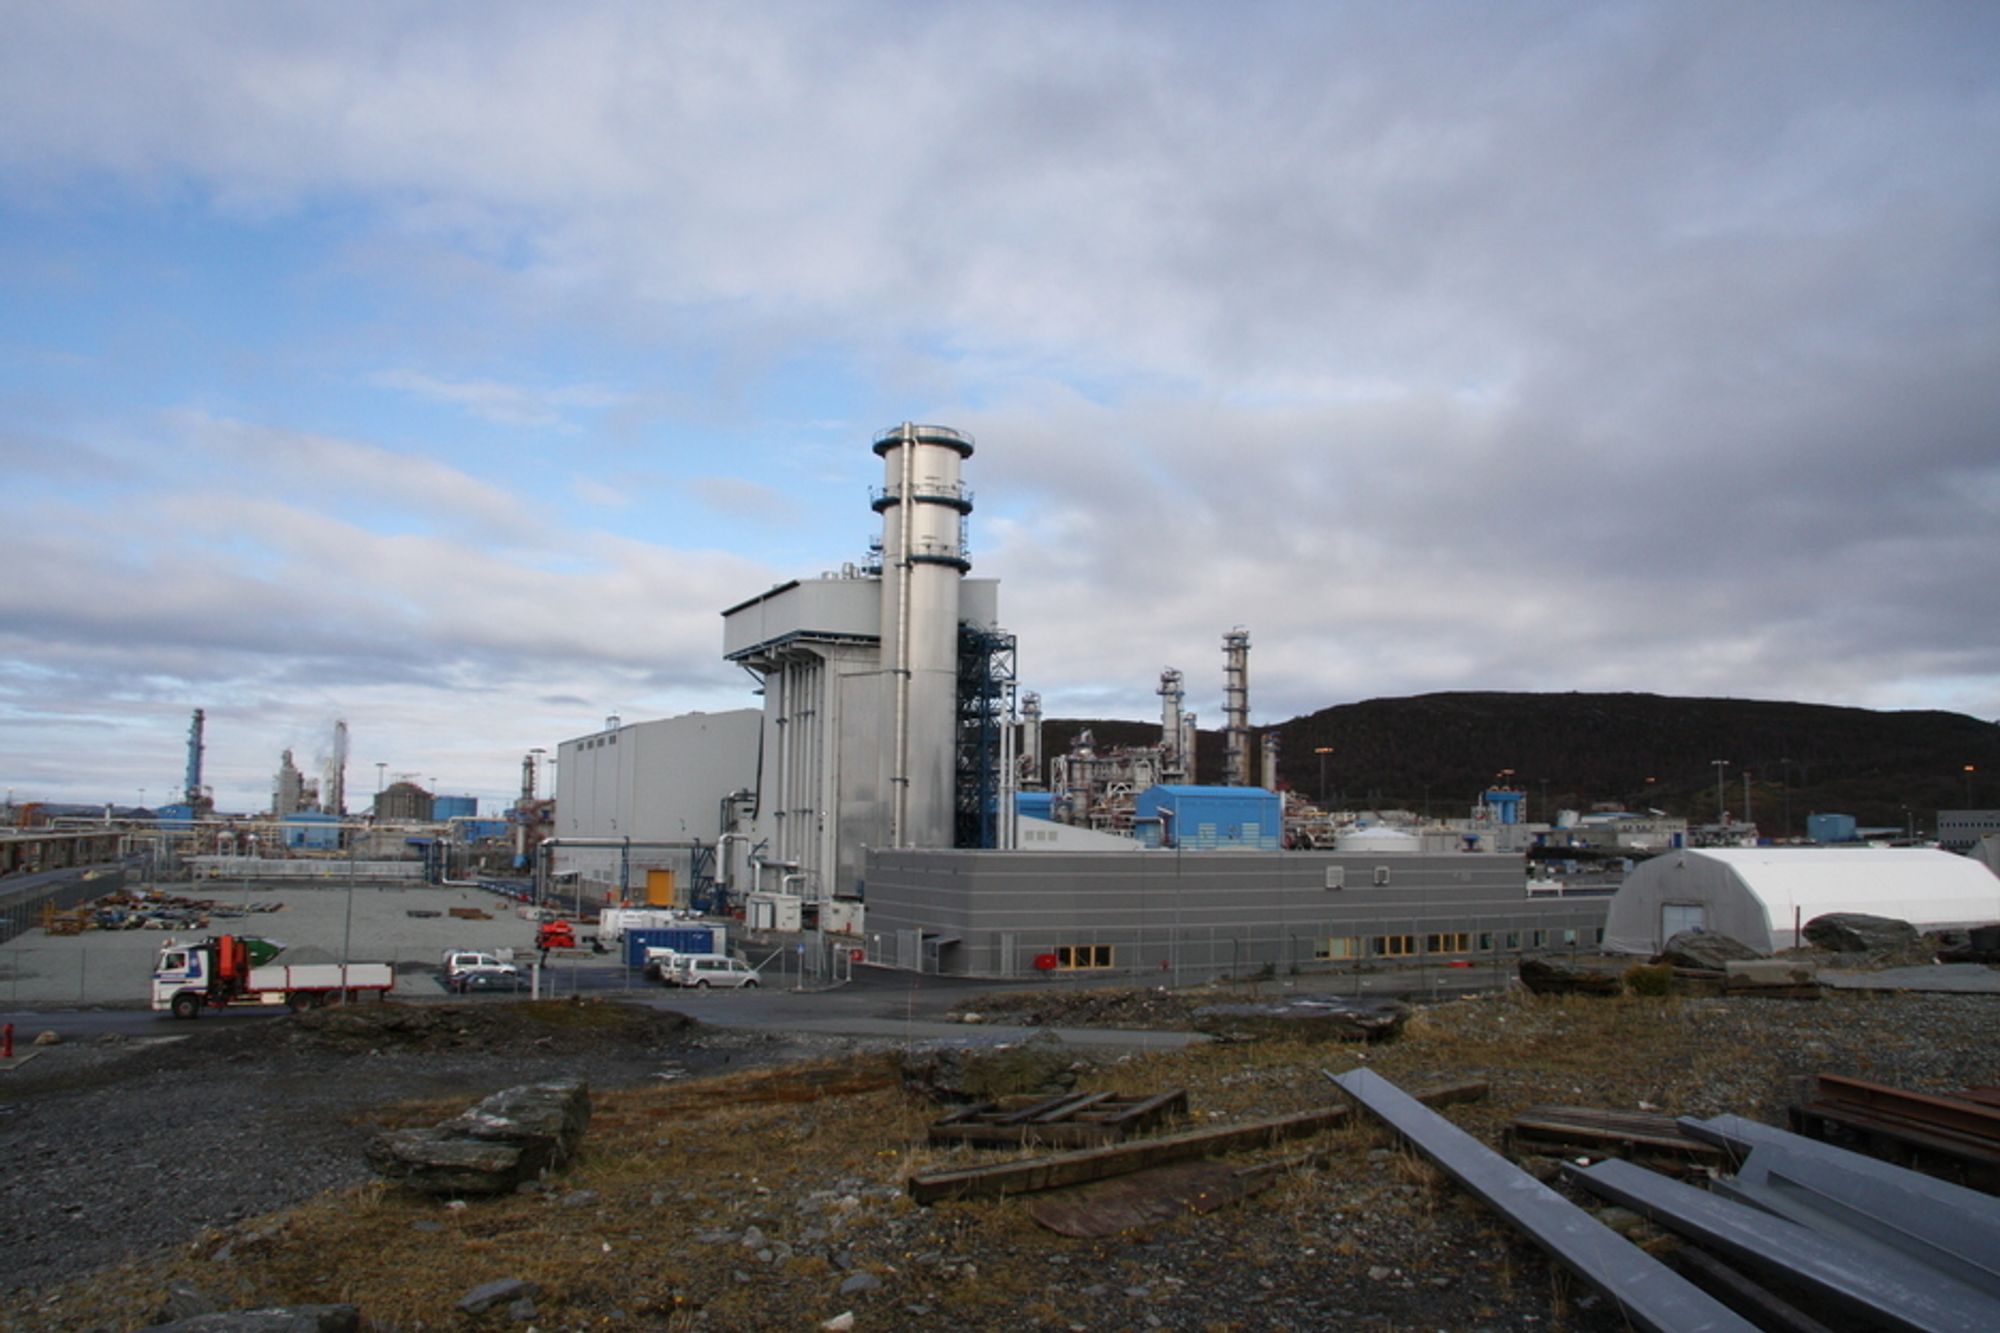 Det er nå hakket mer usikkert om det faktisk blir CO2-rensing ved gasskraftverket på Kårstø. Regjeringen vil se nærmere på driftsmønsteret før avgjørelsen tas.